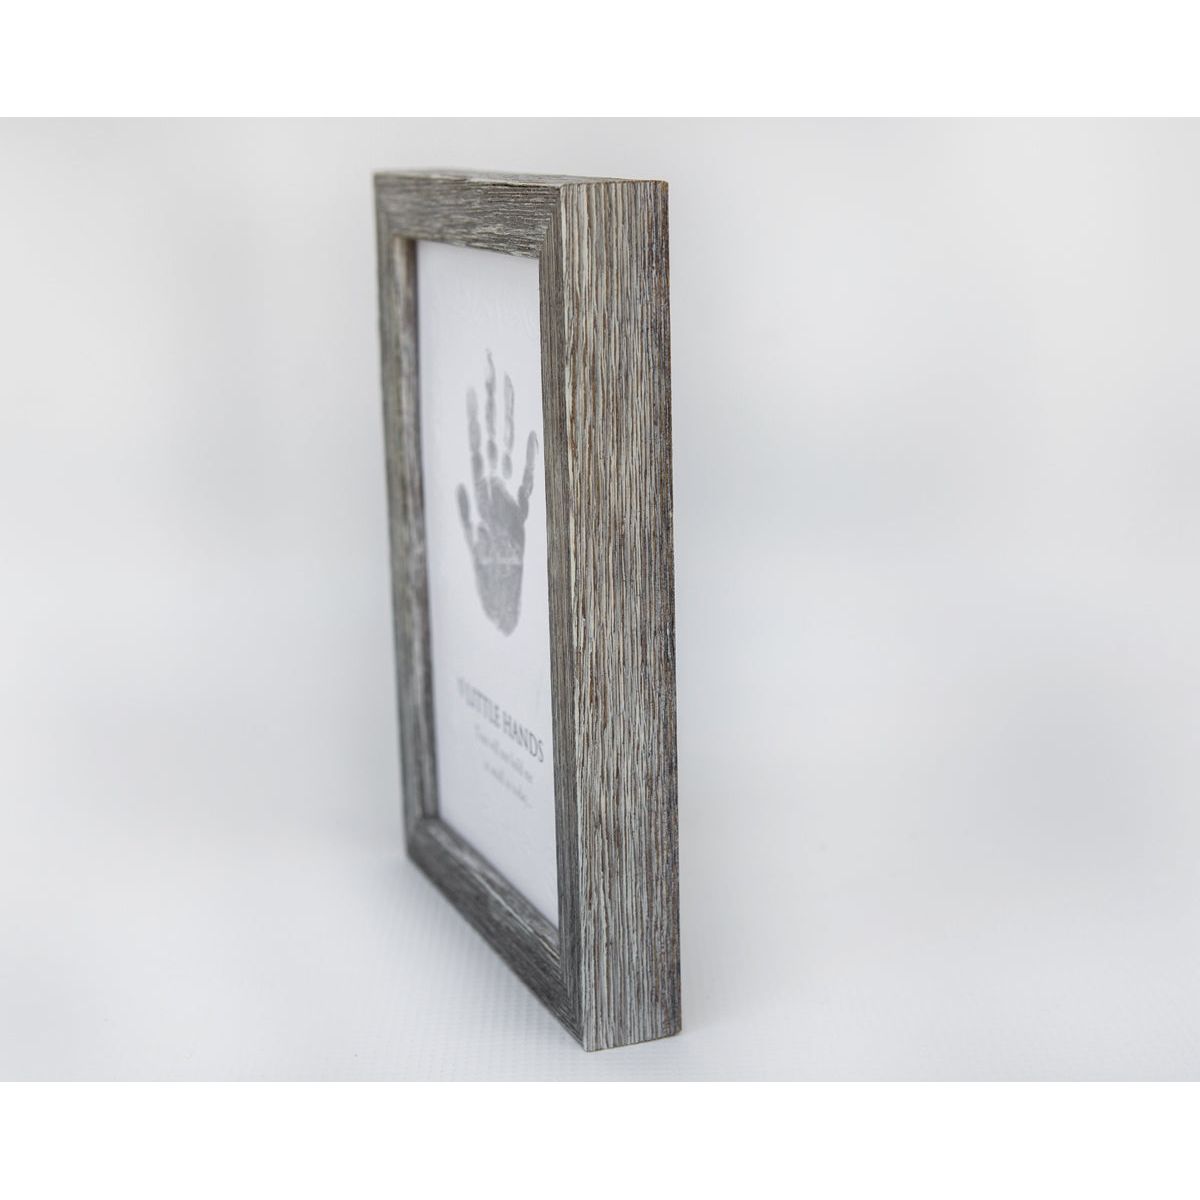 First Christmas Frame: Handprint Keepsake 5x7